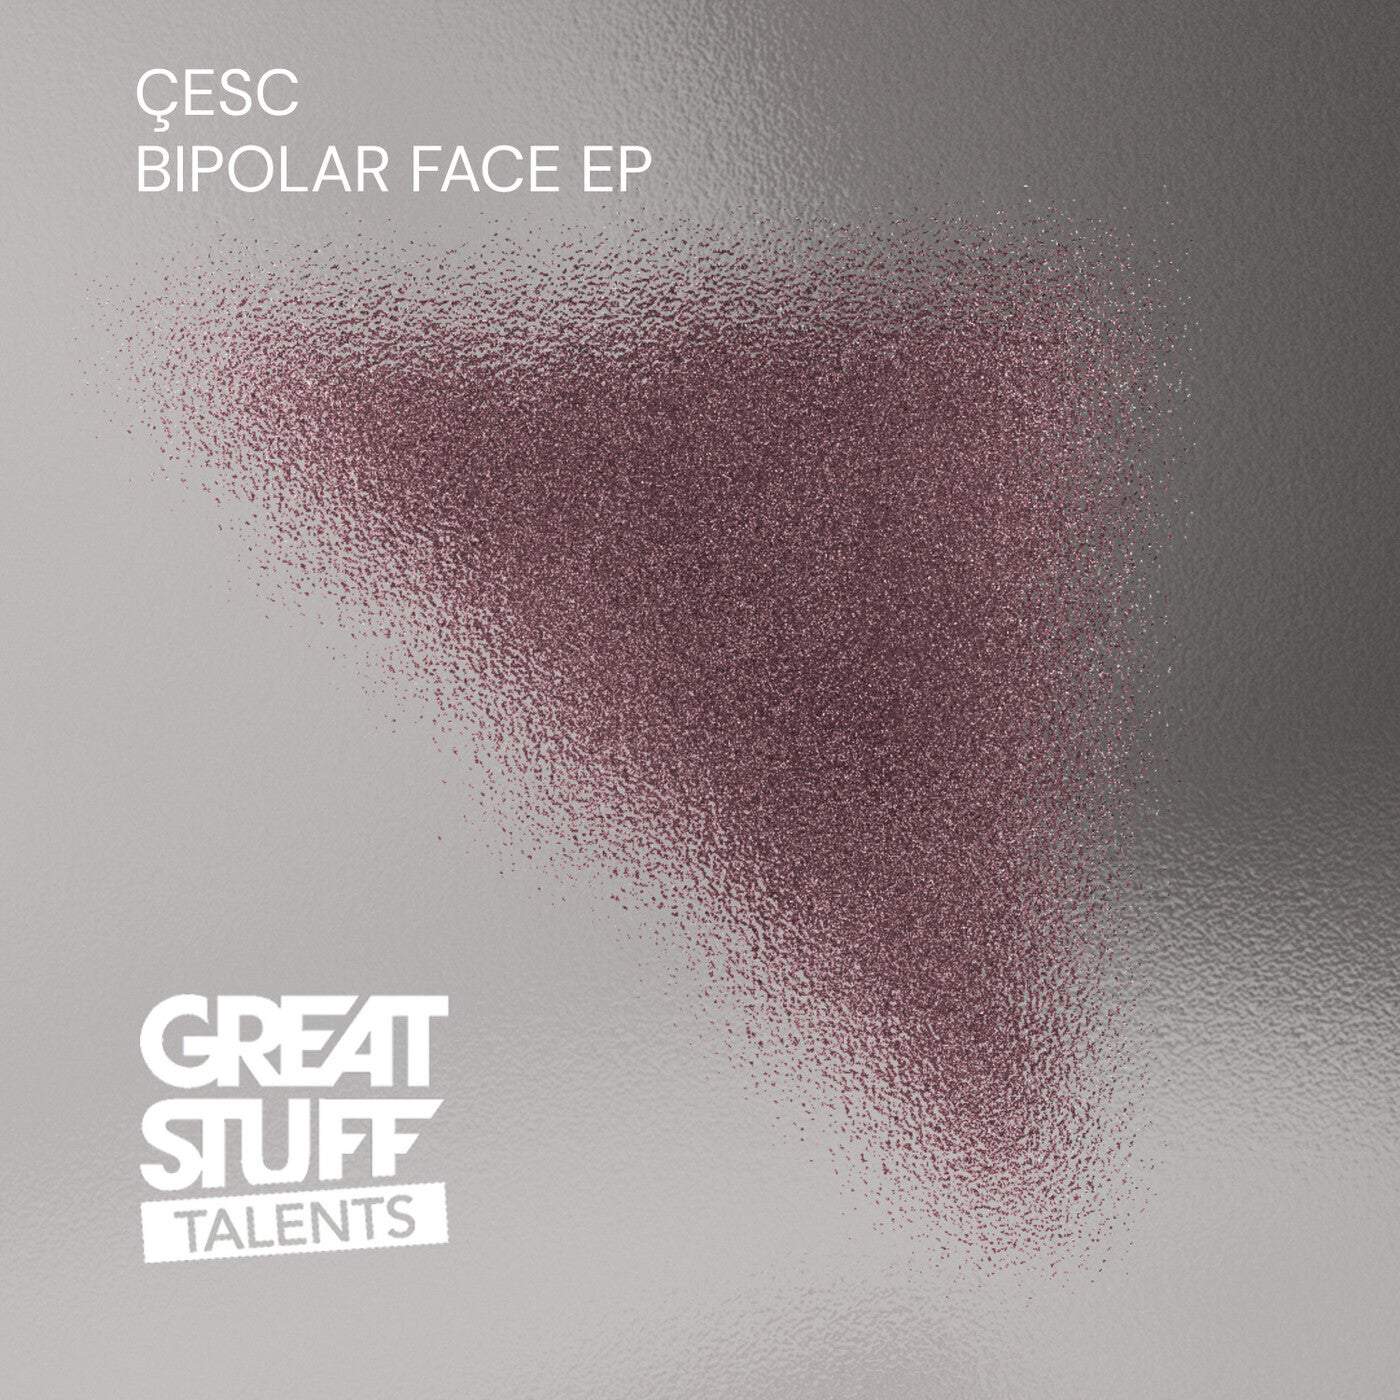 Download Çesc - Bipolar Face EP on Electrobuzz